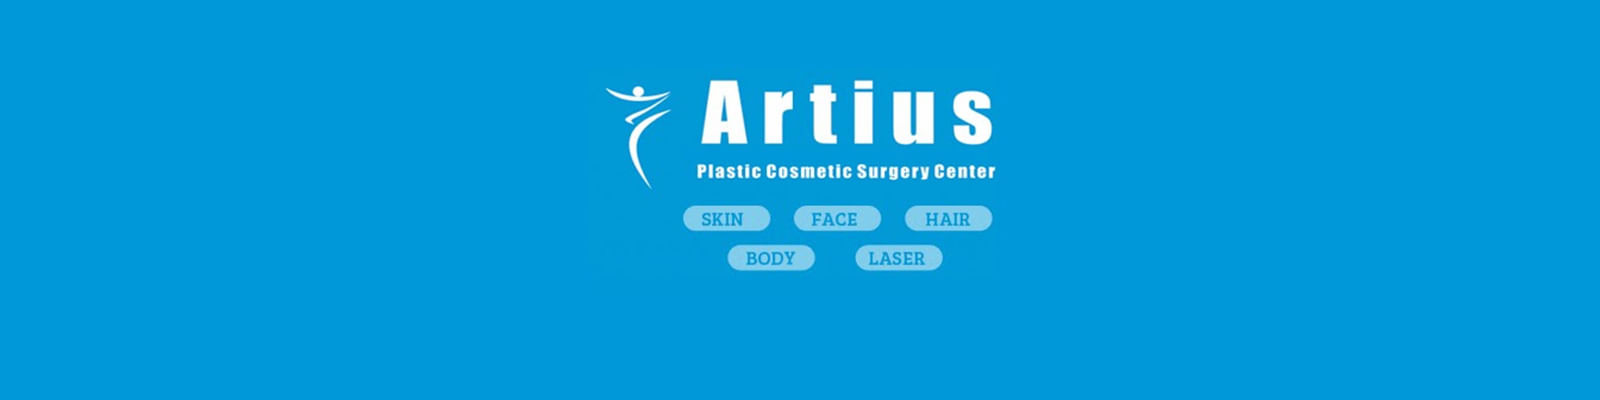 Artius Plastic Cosmetic Skin & Laser Centre